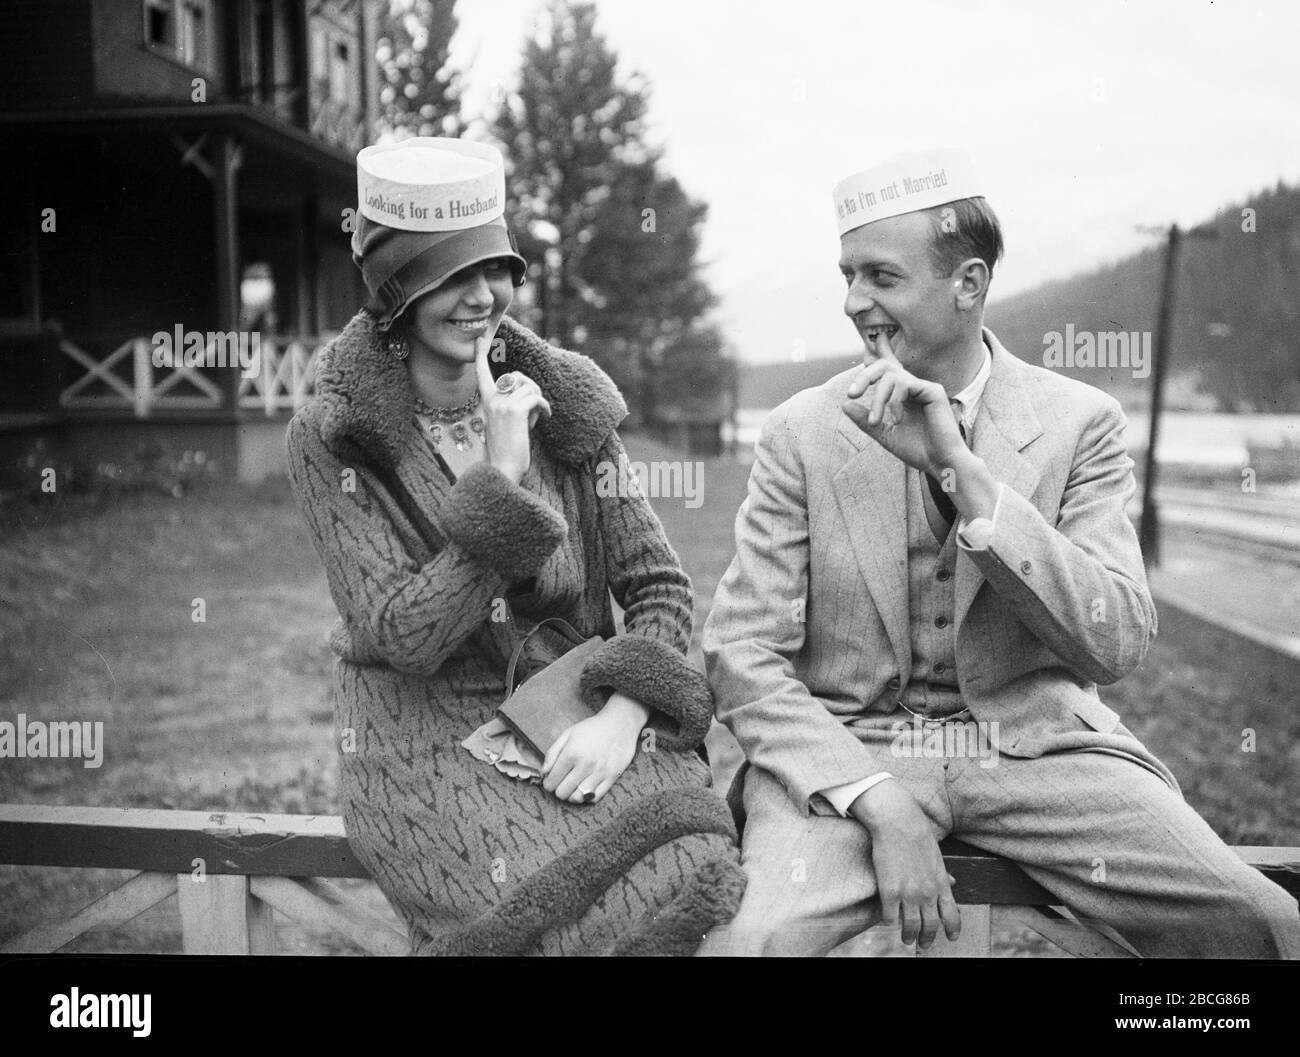 Un uomo e una donna che indossano cappelli divertenti si siedono a grinning  l'uno con le dita appuntate alla bocca, circa 1935. Il cappello della donna  recita 